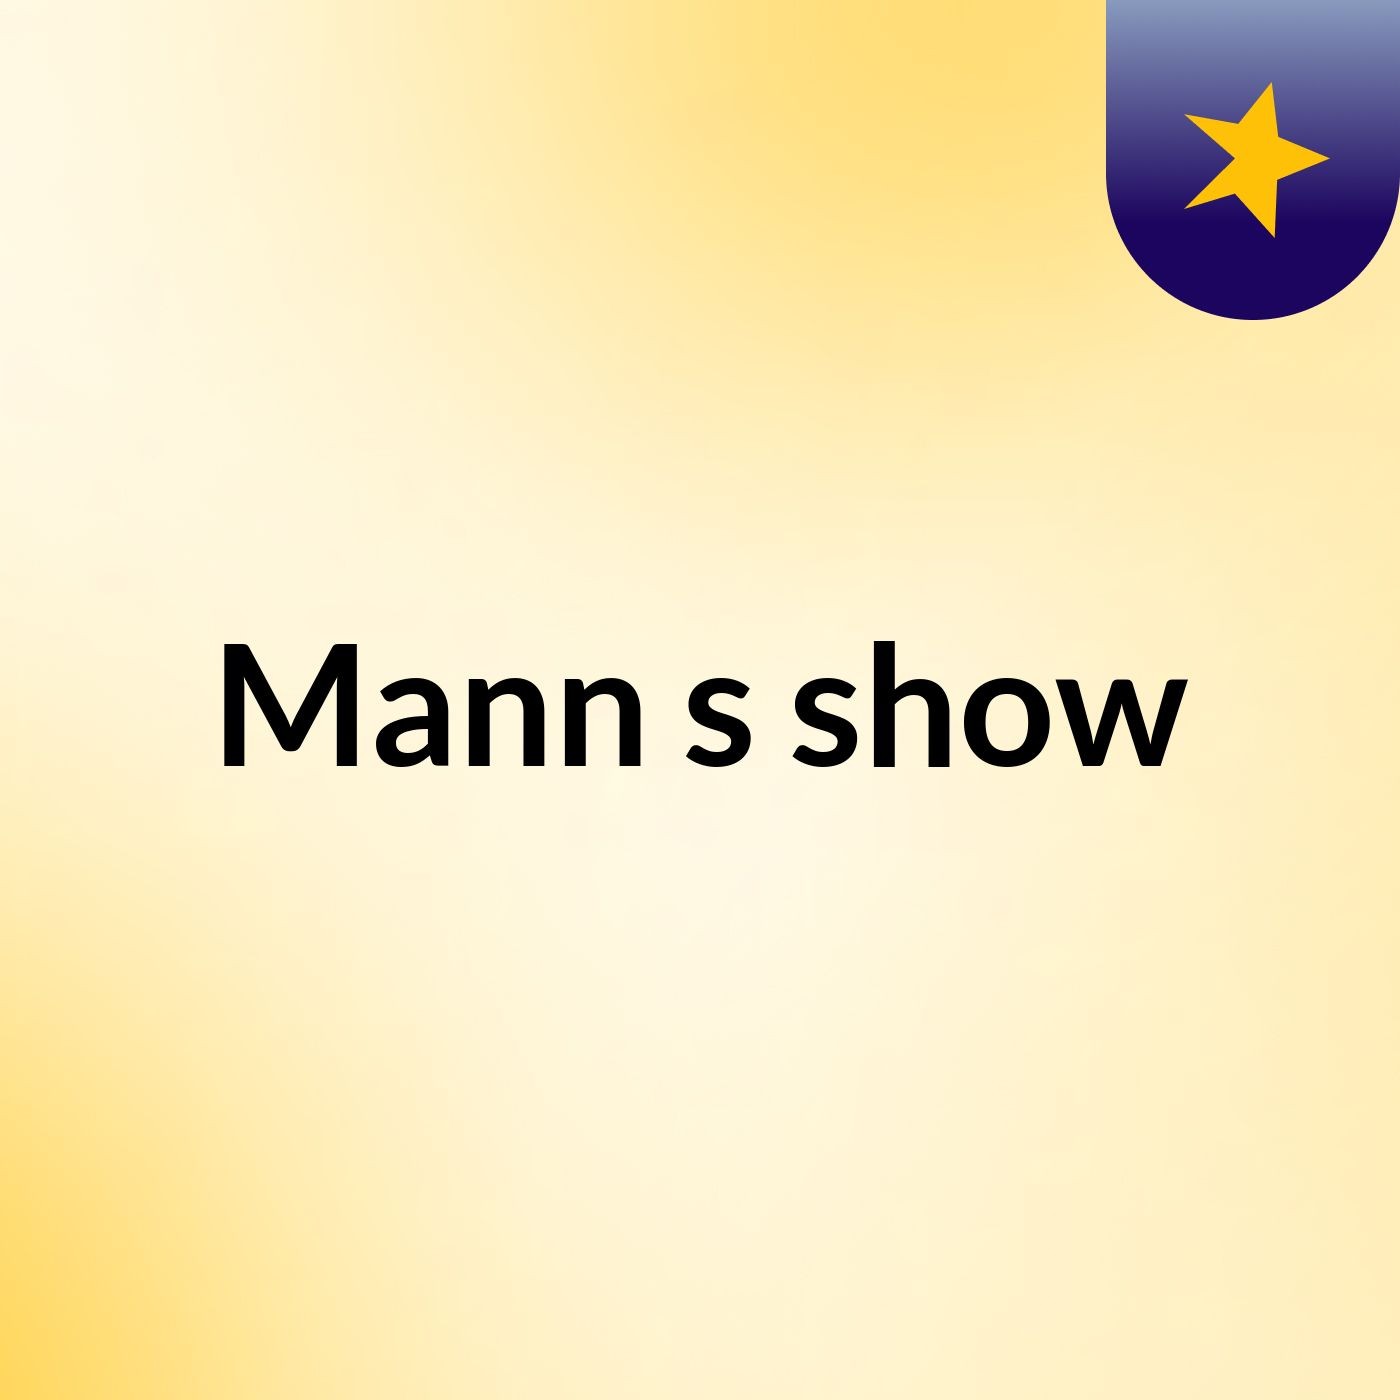 Mann's show